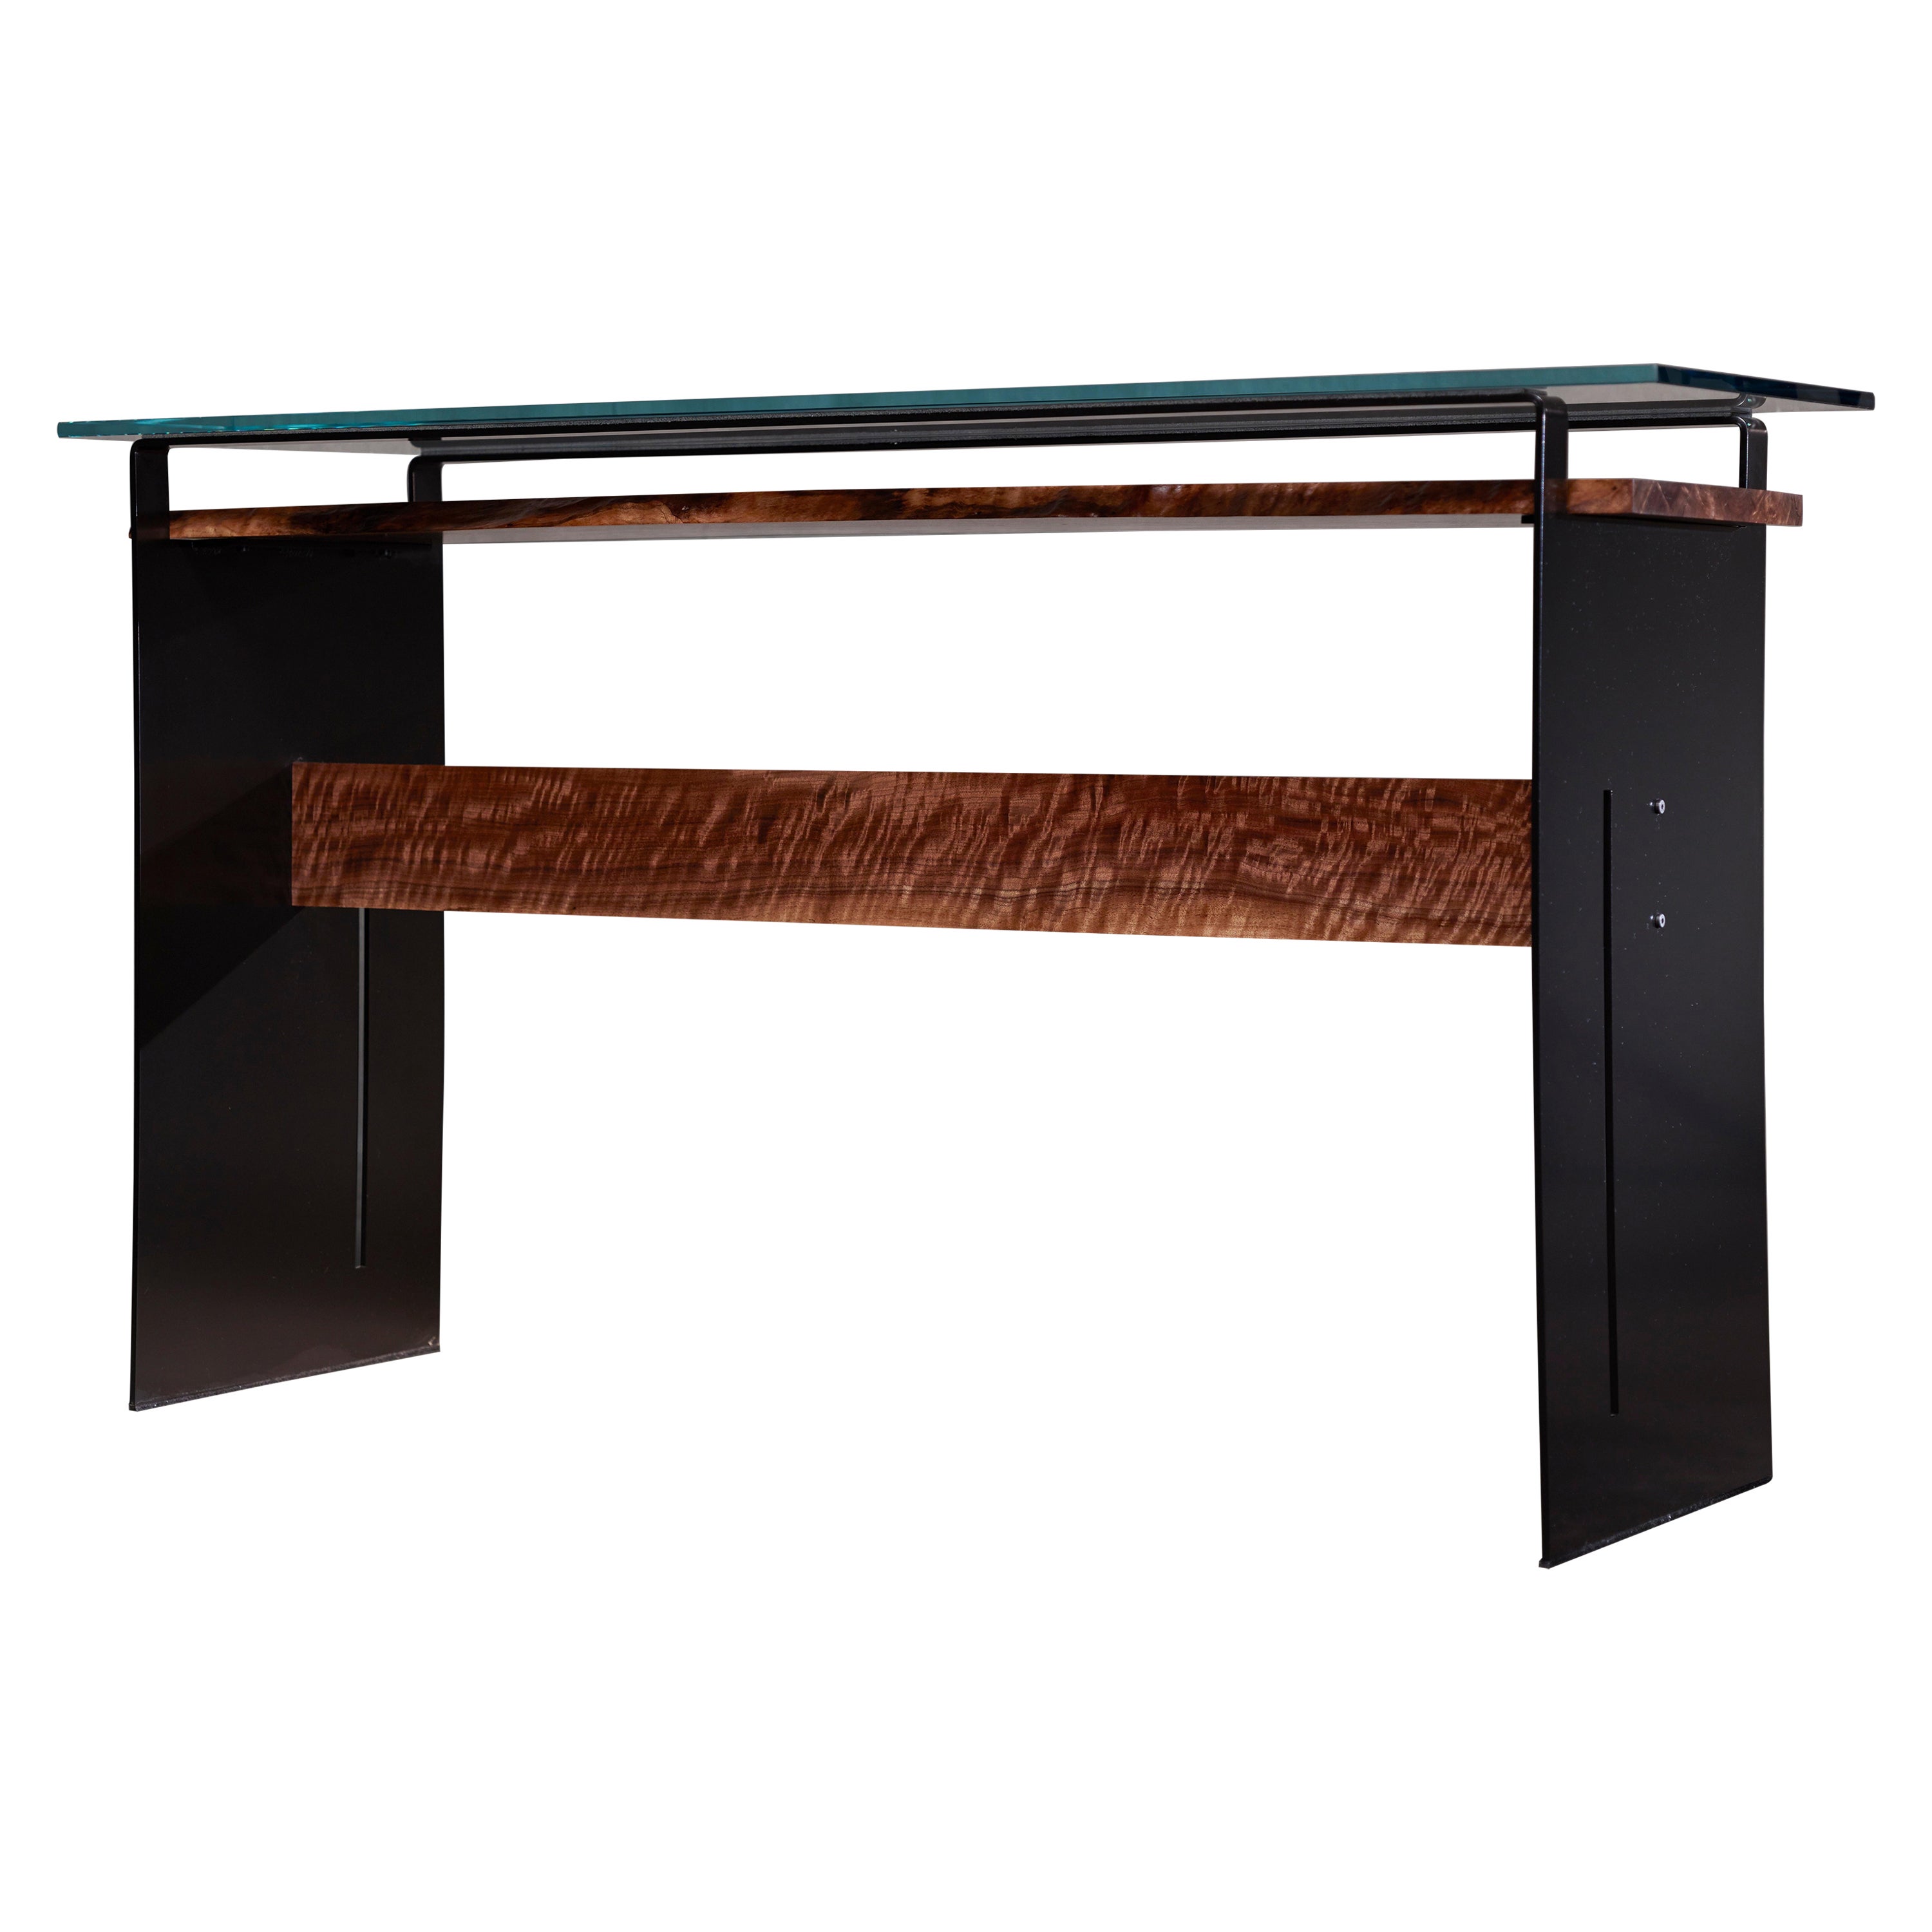 Table console moderne en noyer noir matelassé, structure en acier et verre : Tigre